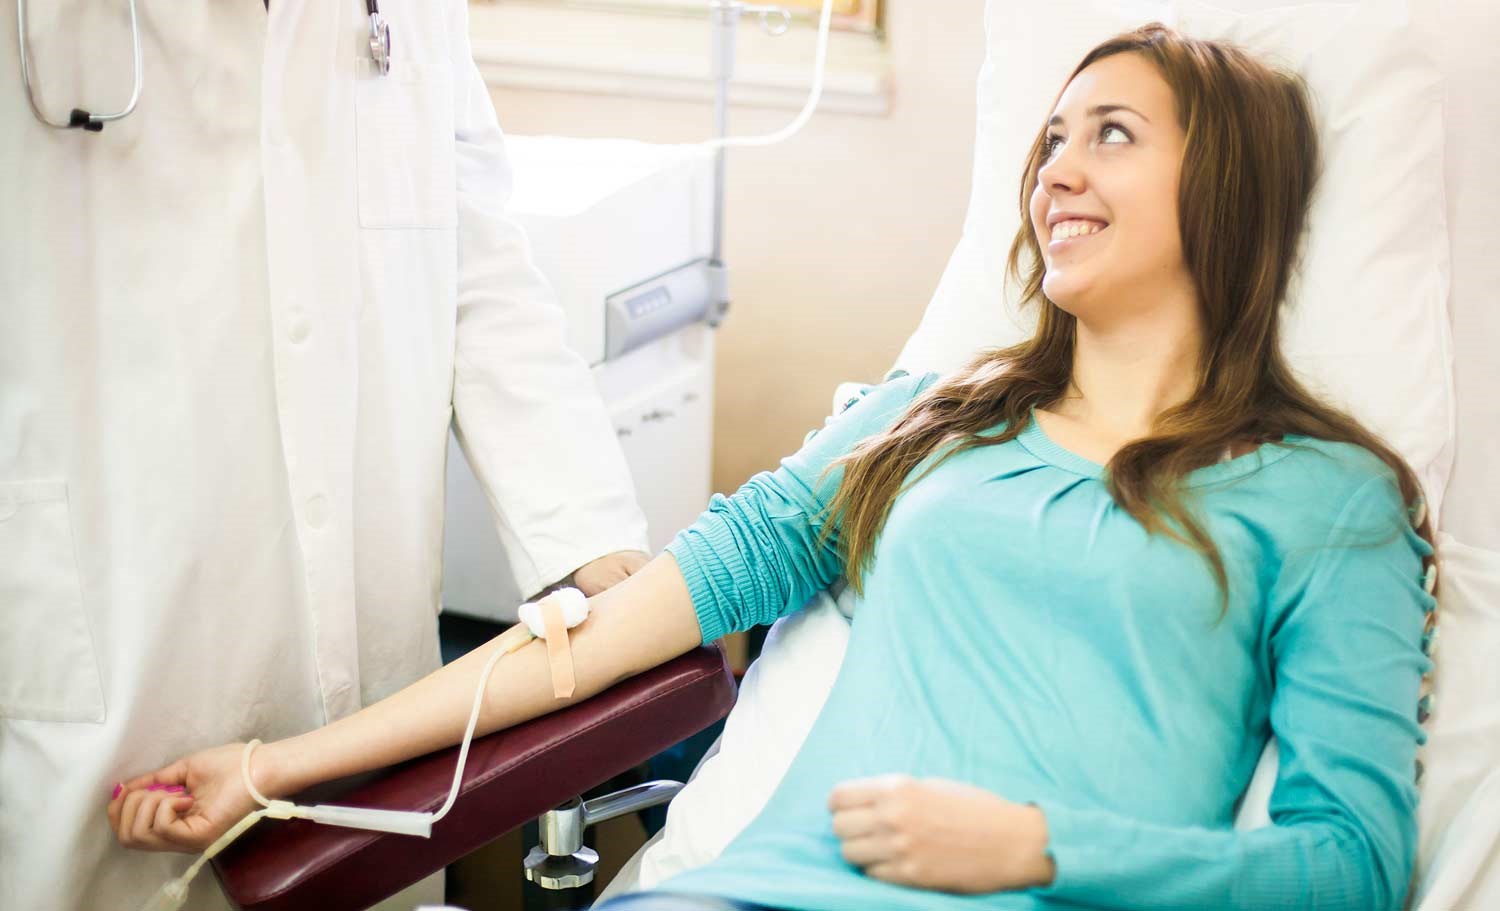 En ung kvinne med langt mørkt hår sitter smilende i en blodgiverstol mens hun tapper blod